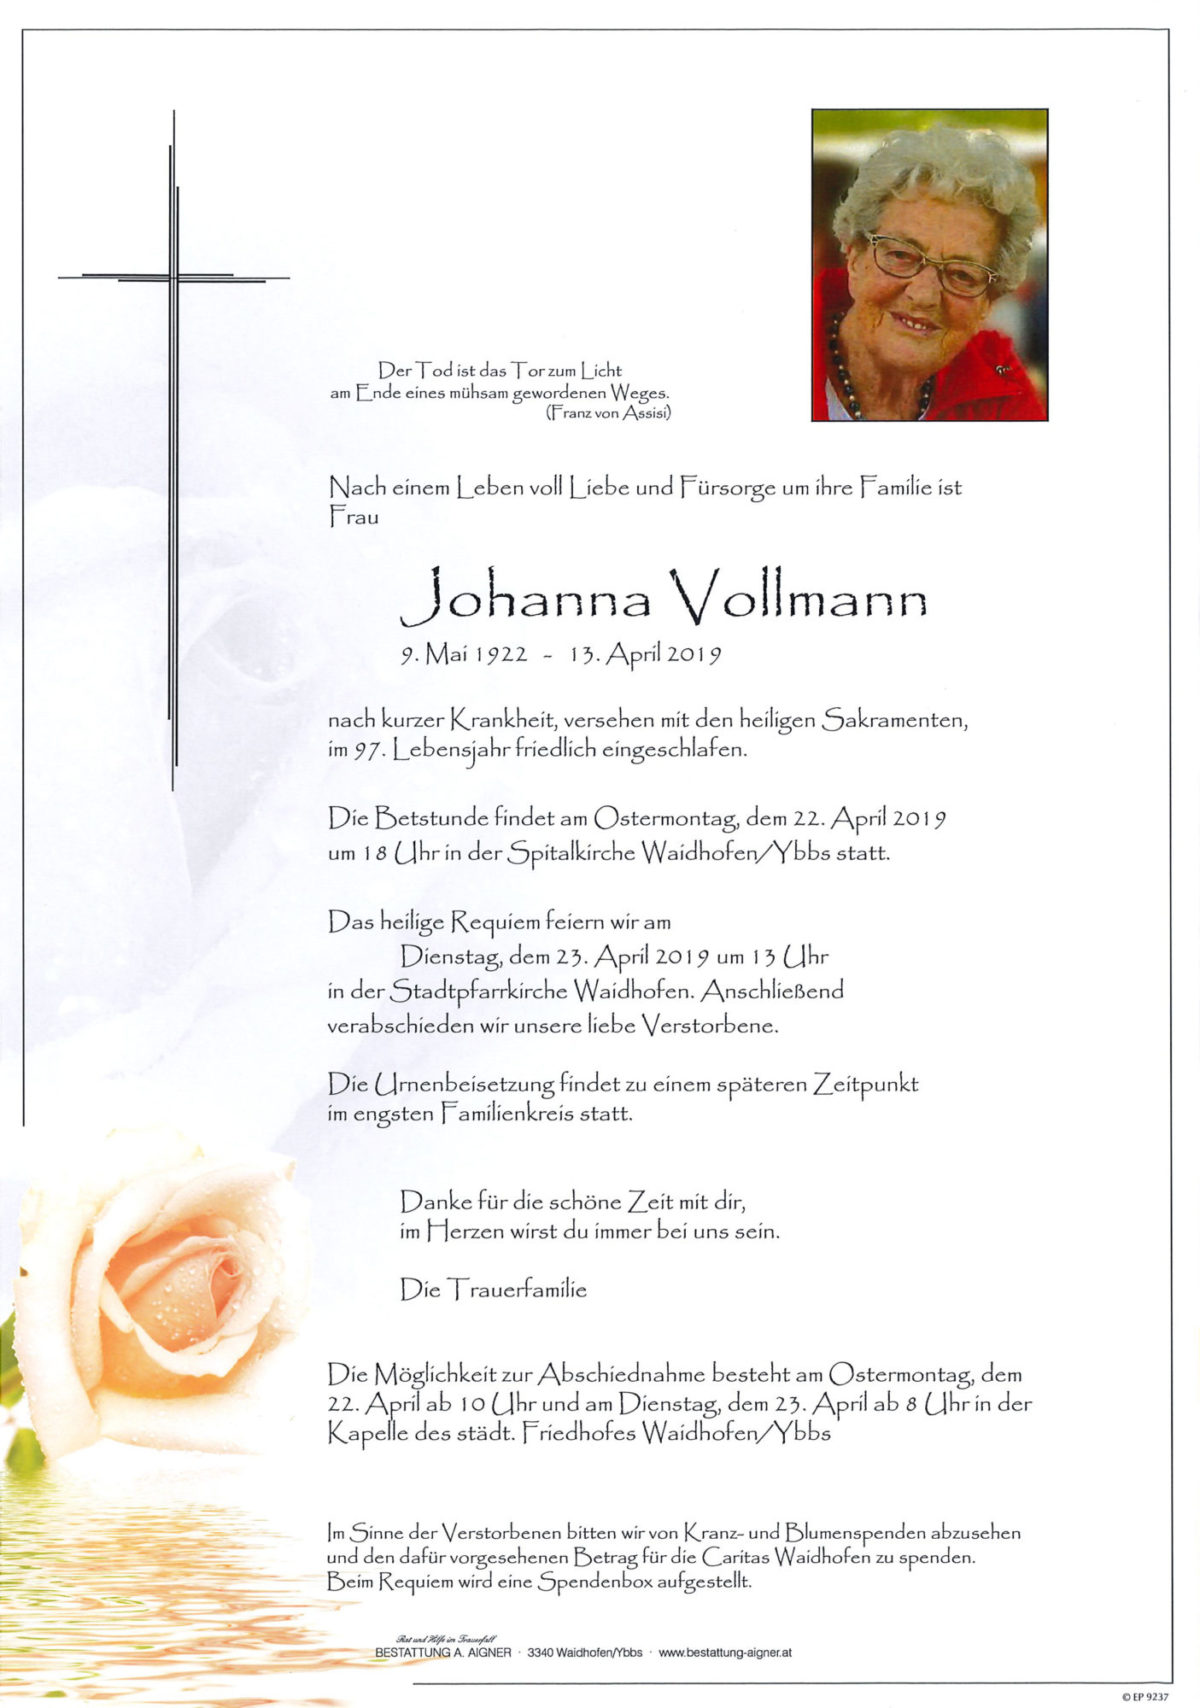 Johanna Vollmann